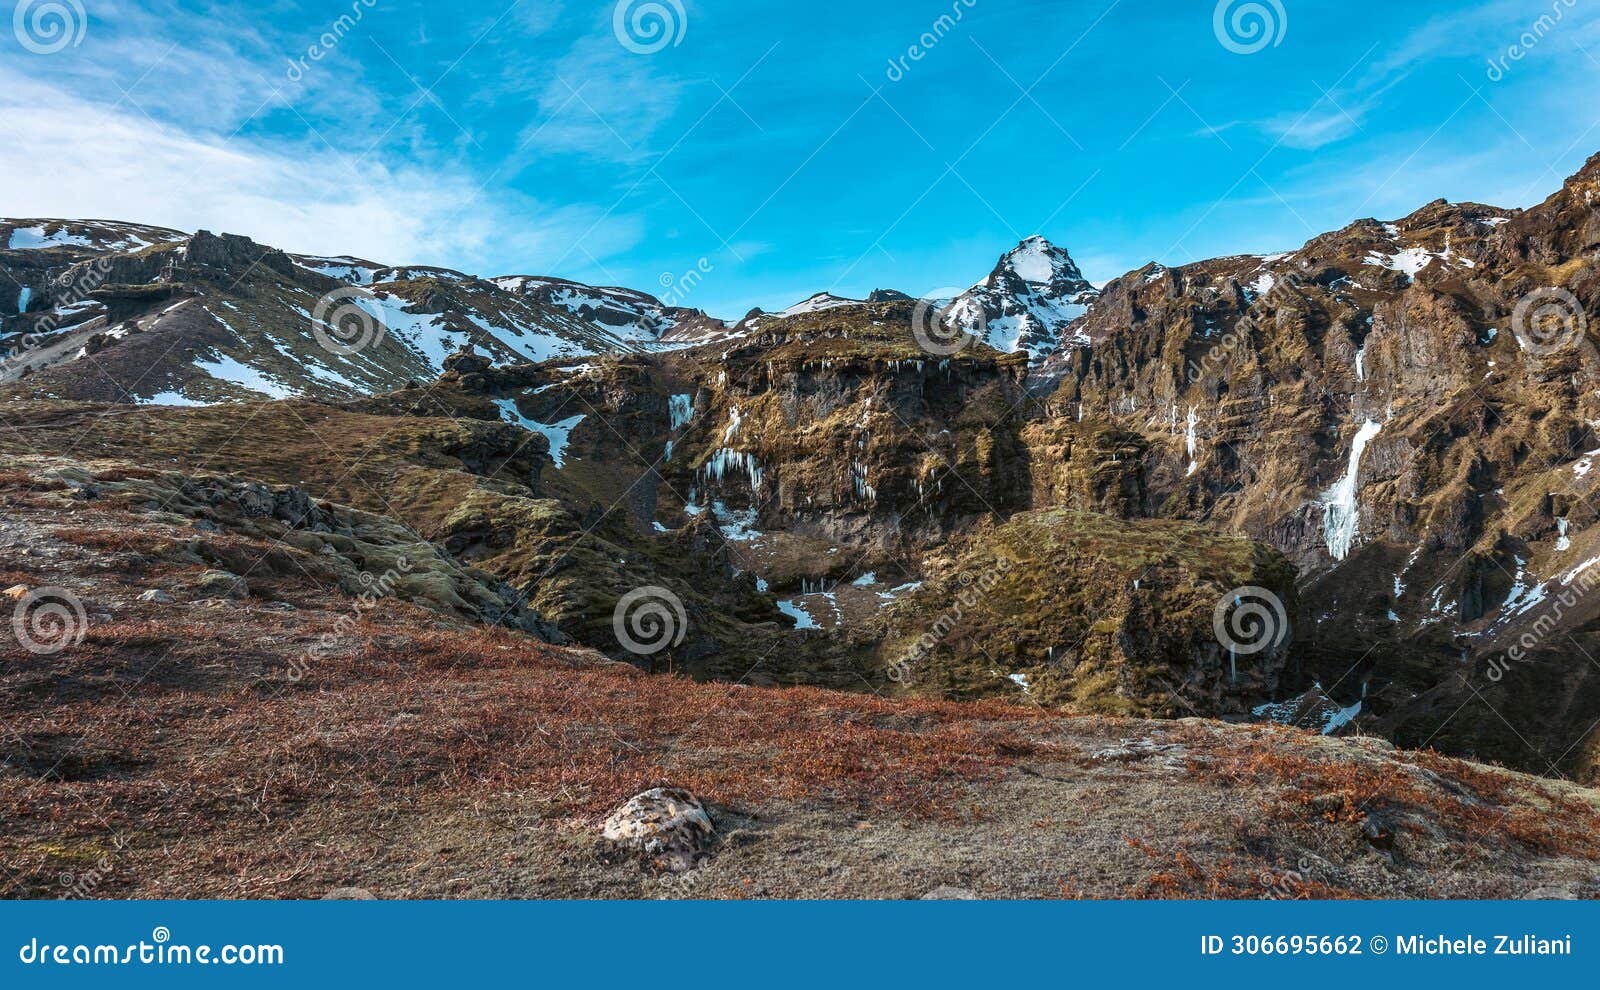 mÃÂºlagljÃÂºfur canyon in iceland